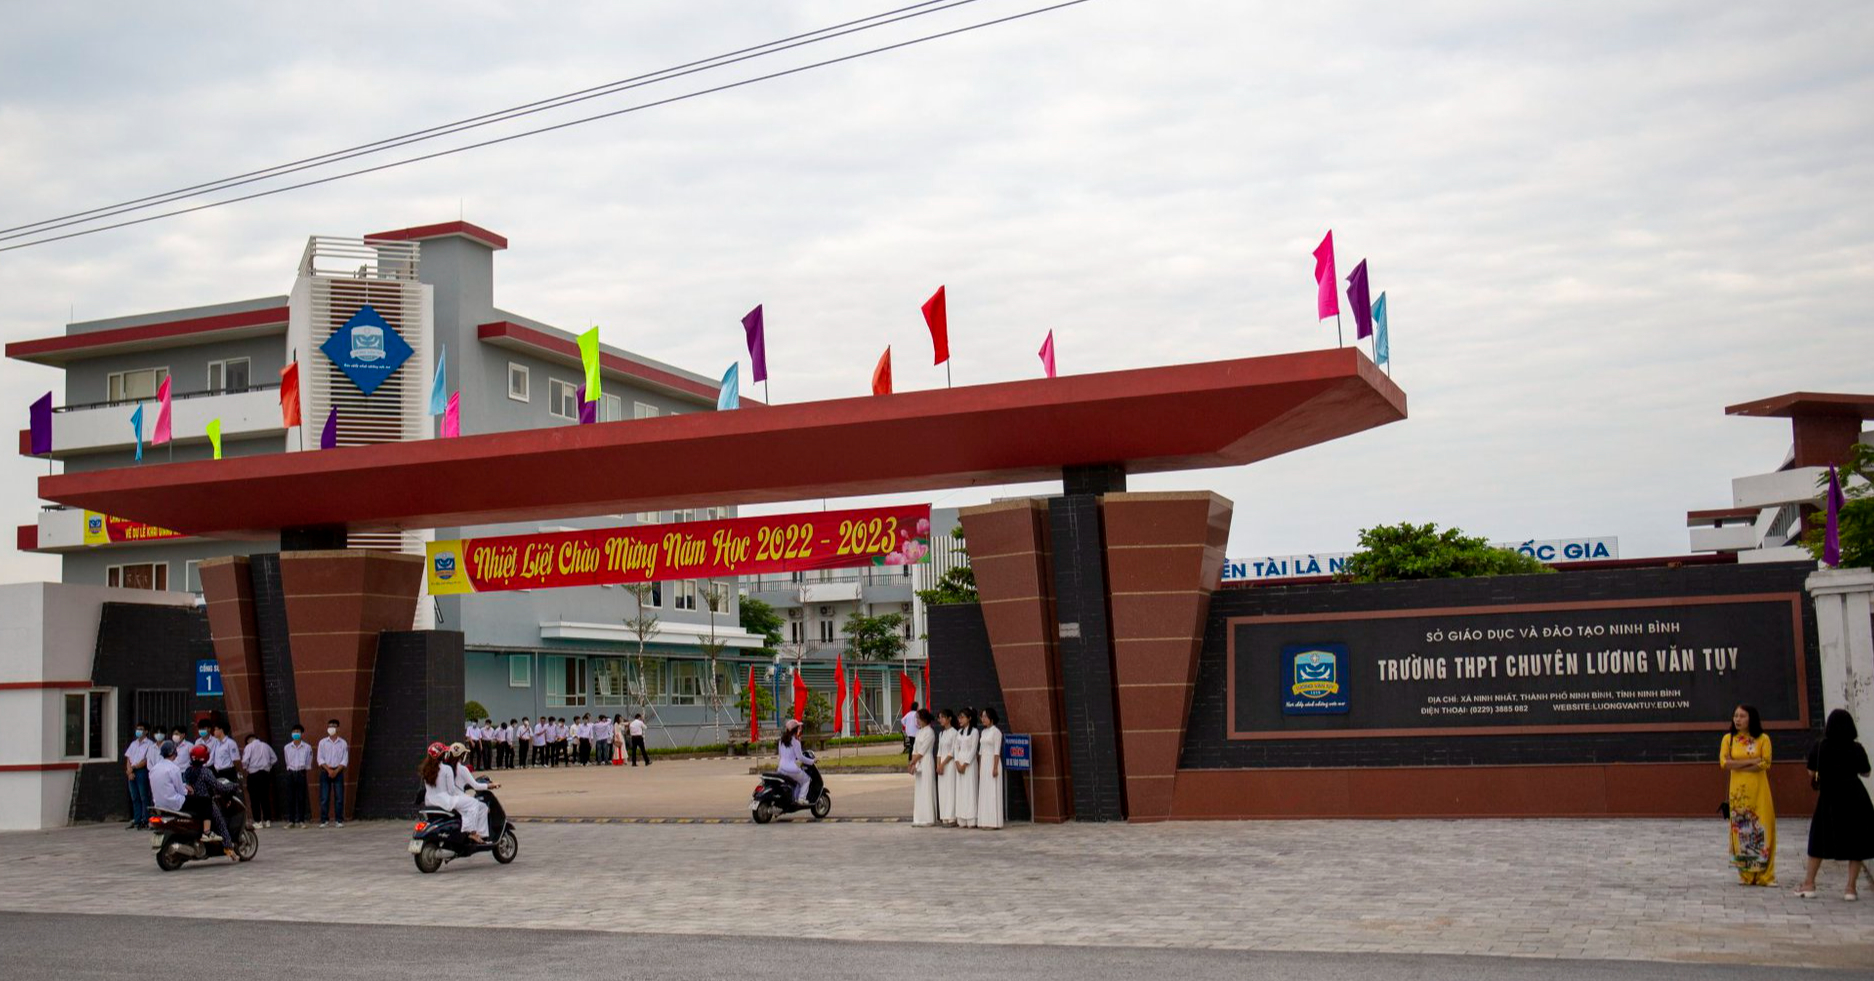 Thầy hiệu trưởng ngôi trường danh giá nhất Ninh Bình tiết lộ bí kíp thu hút nhân tài - Ảnh 7.